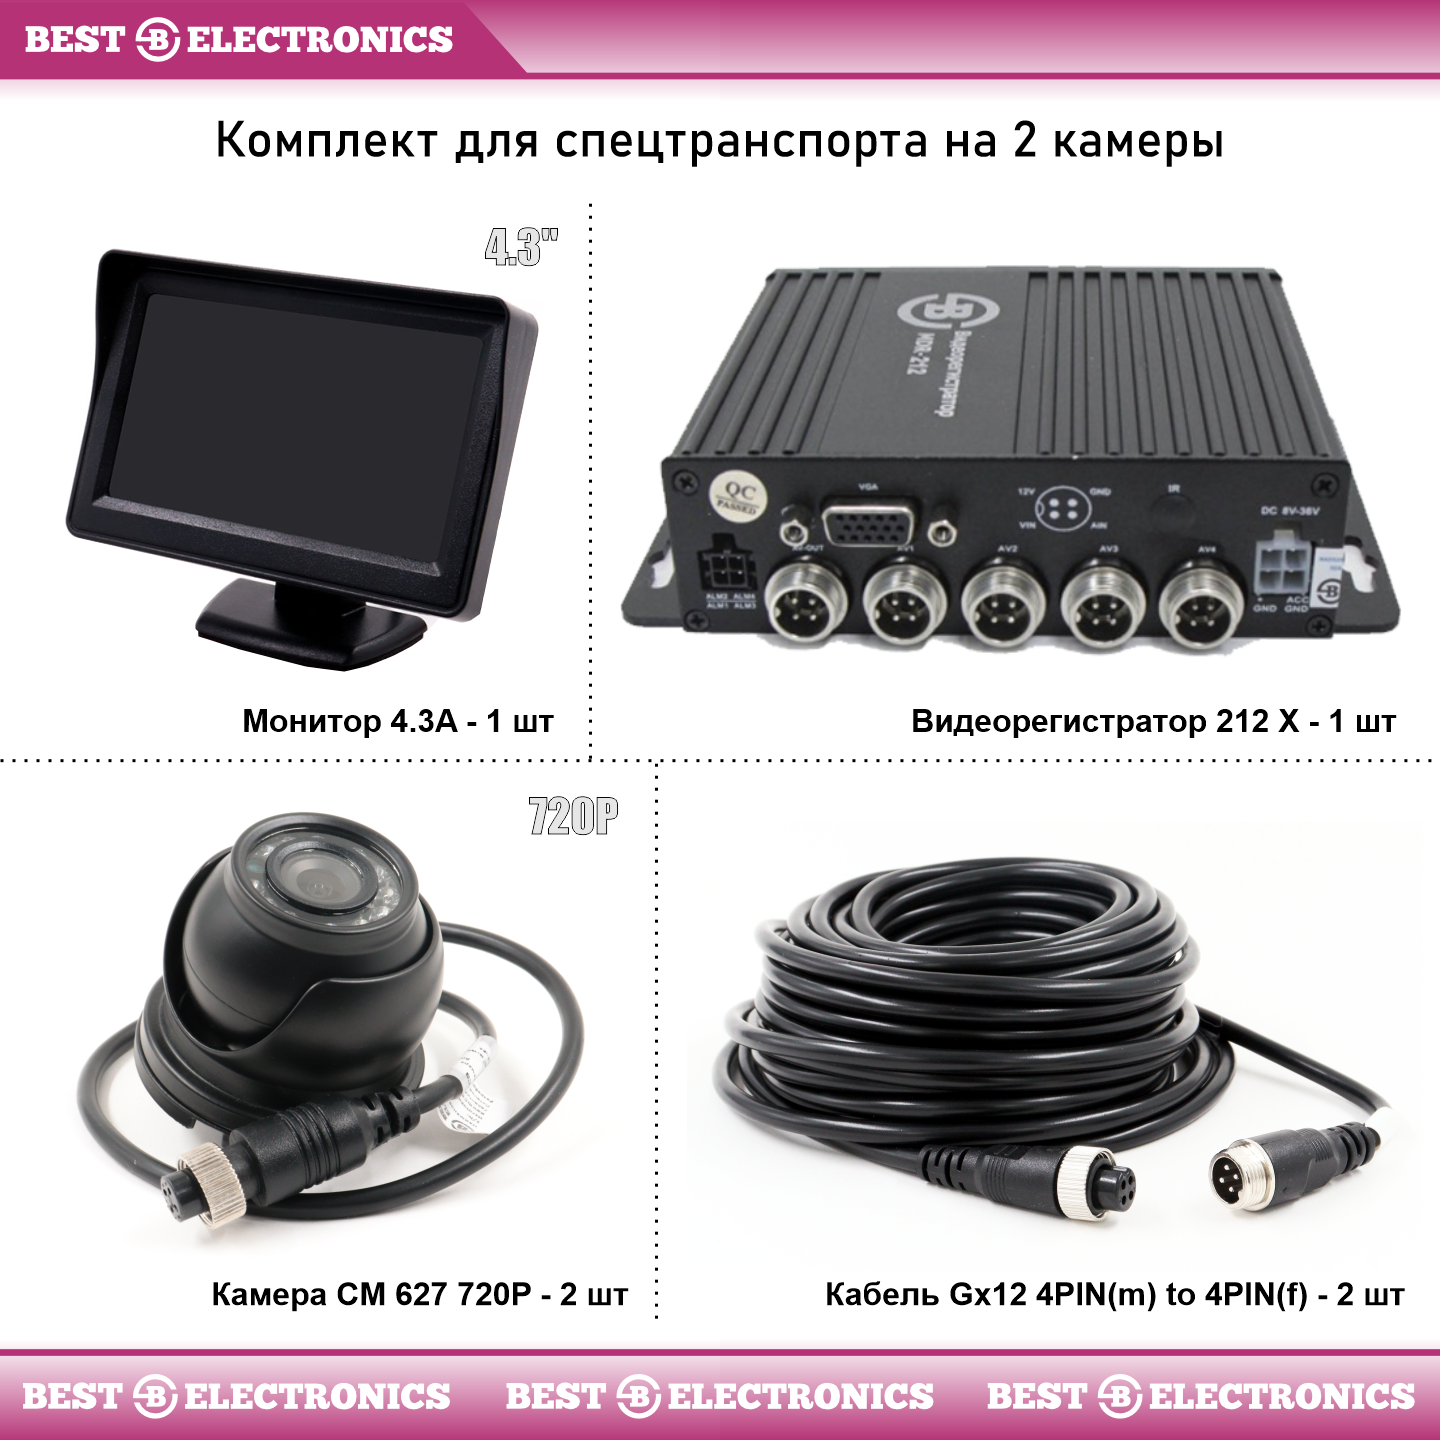 Видеорегистратор Best Electronics 212X для спецтехники на 2 камеры с монитором